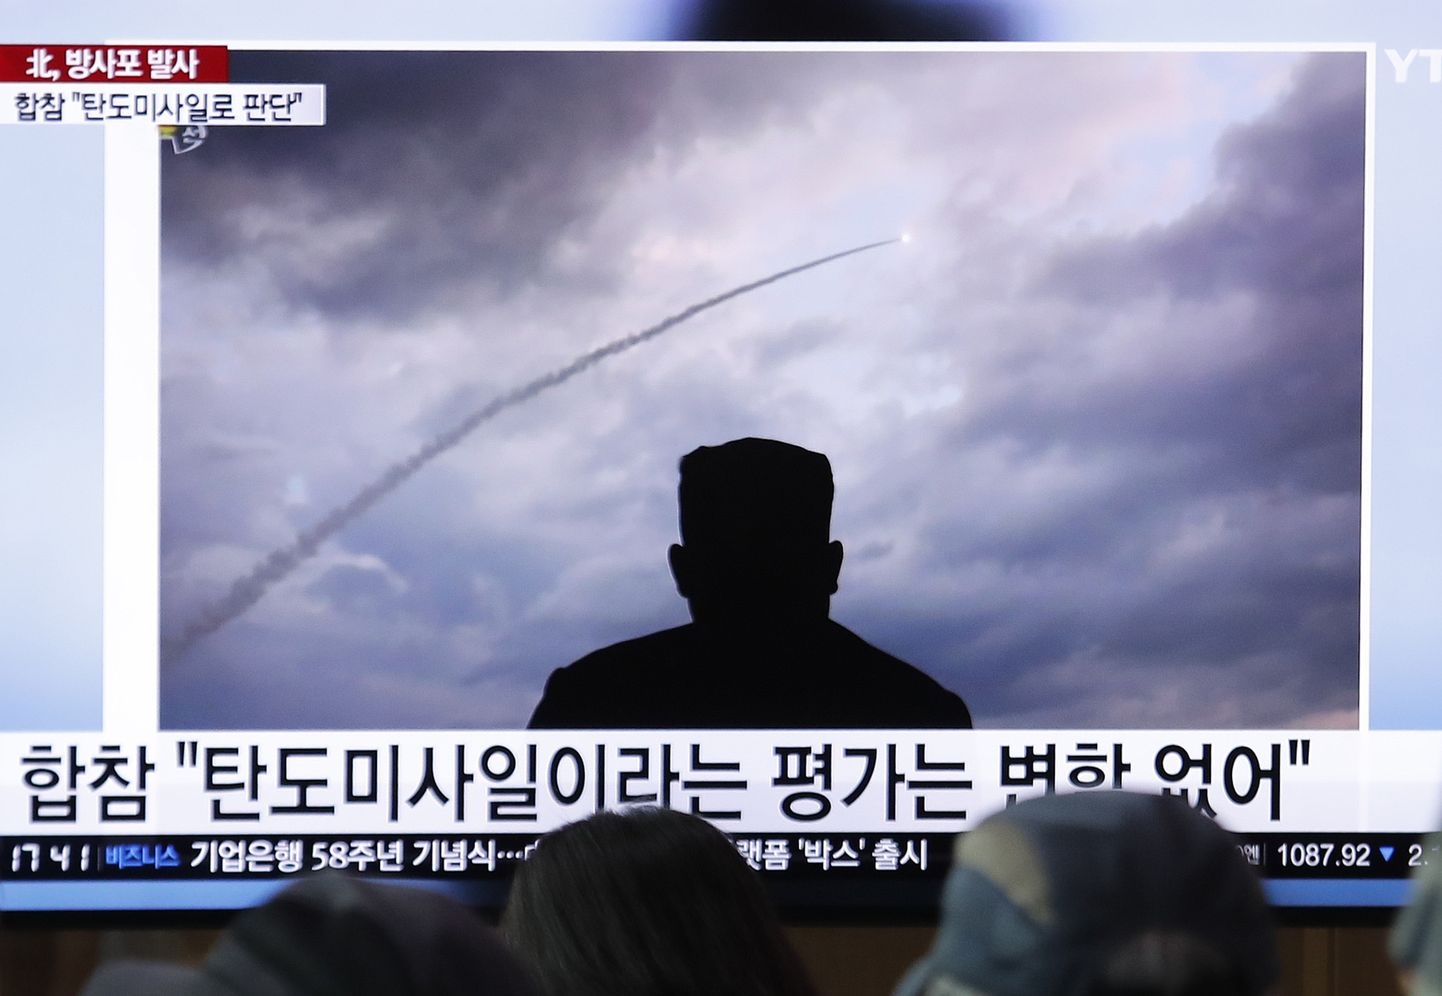 Inimesed vaatamas telekast Põhja-Korea raketikatsetust. Raketikaare all seljaga vaataja poole olev mees on Põhja-Korea liider Kim Jong-un.